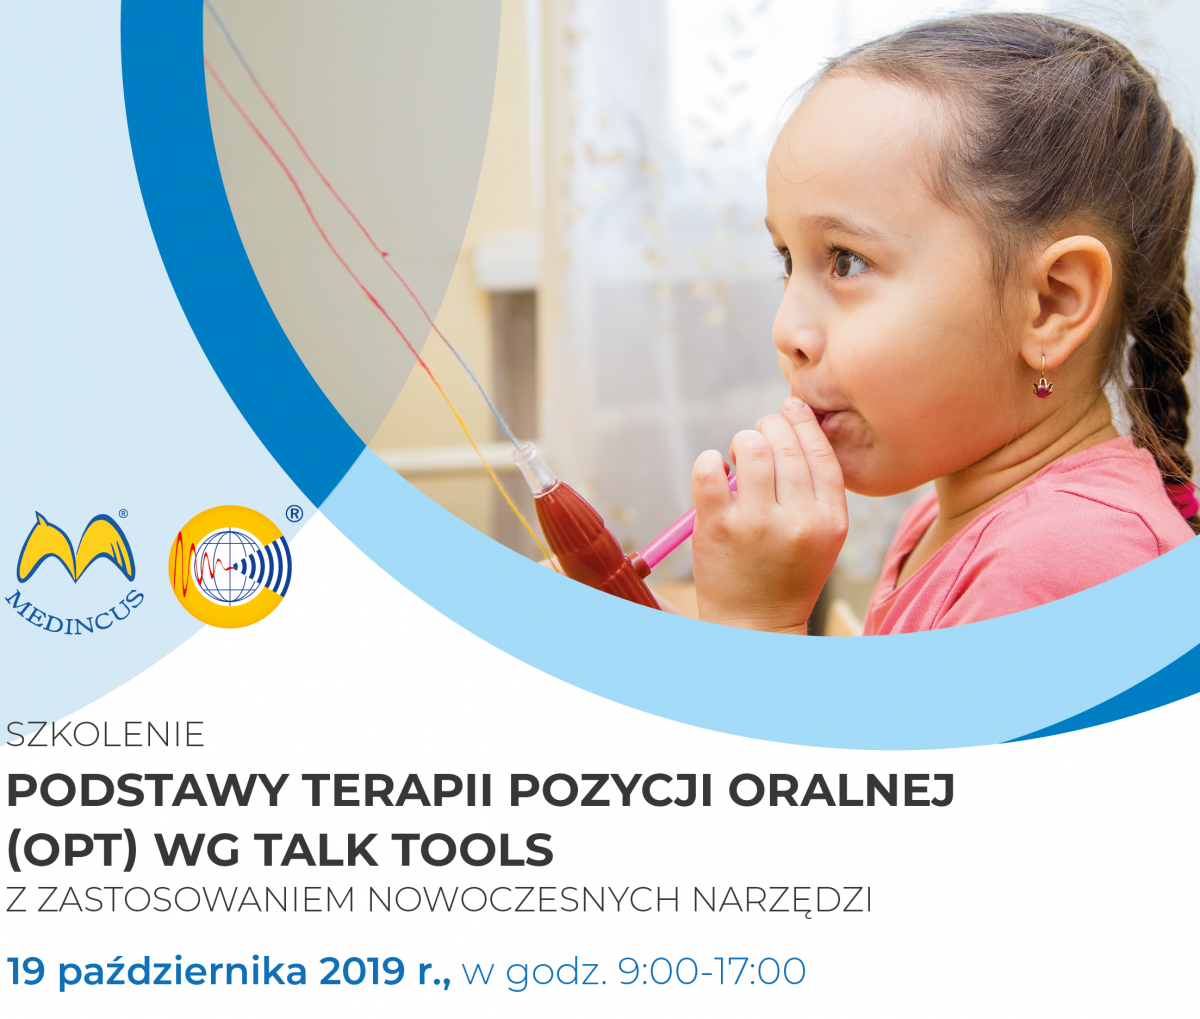 Podstawy-terapii-pozycji-oranlej-19.10.2019-Szczecin-04-e1571735746322-1200x1019.png